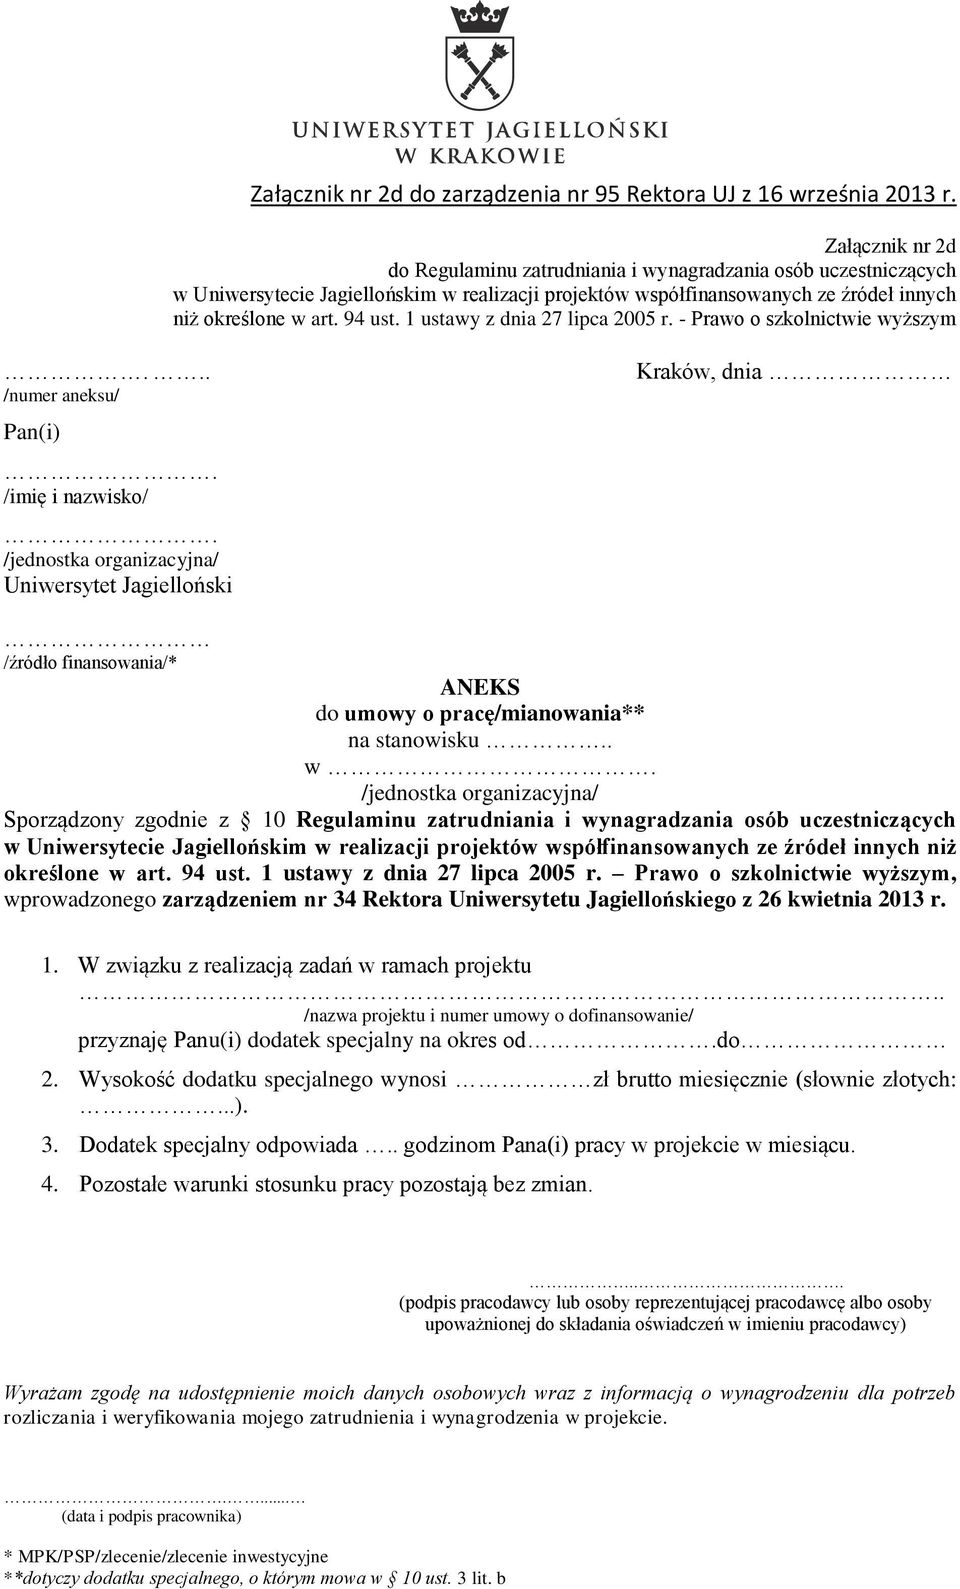 94 ust. 1 ustawy z dnia 27 lipca 2005 r. Prawo o szkolnictwie wyższym, wprowadzonego zarządzeniem nr 34 Rektora Uniwersytetu Jagiellońskiego z 26 kwietnia 2013 r. 1. W związku z realizacją zadań w ramach projektu.